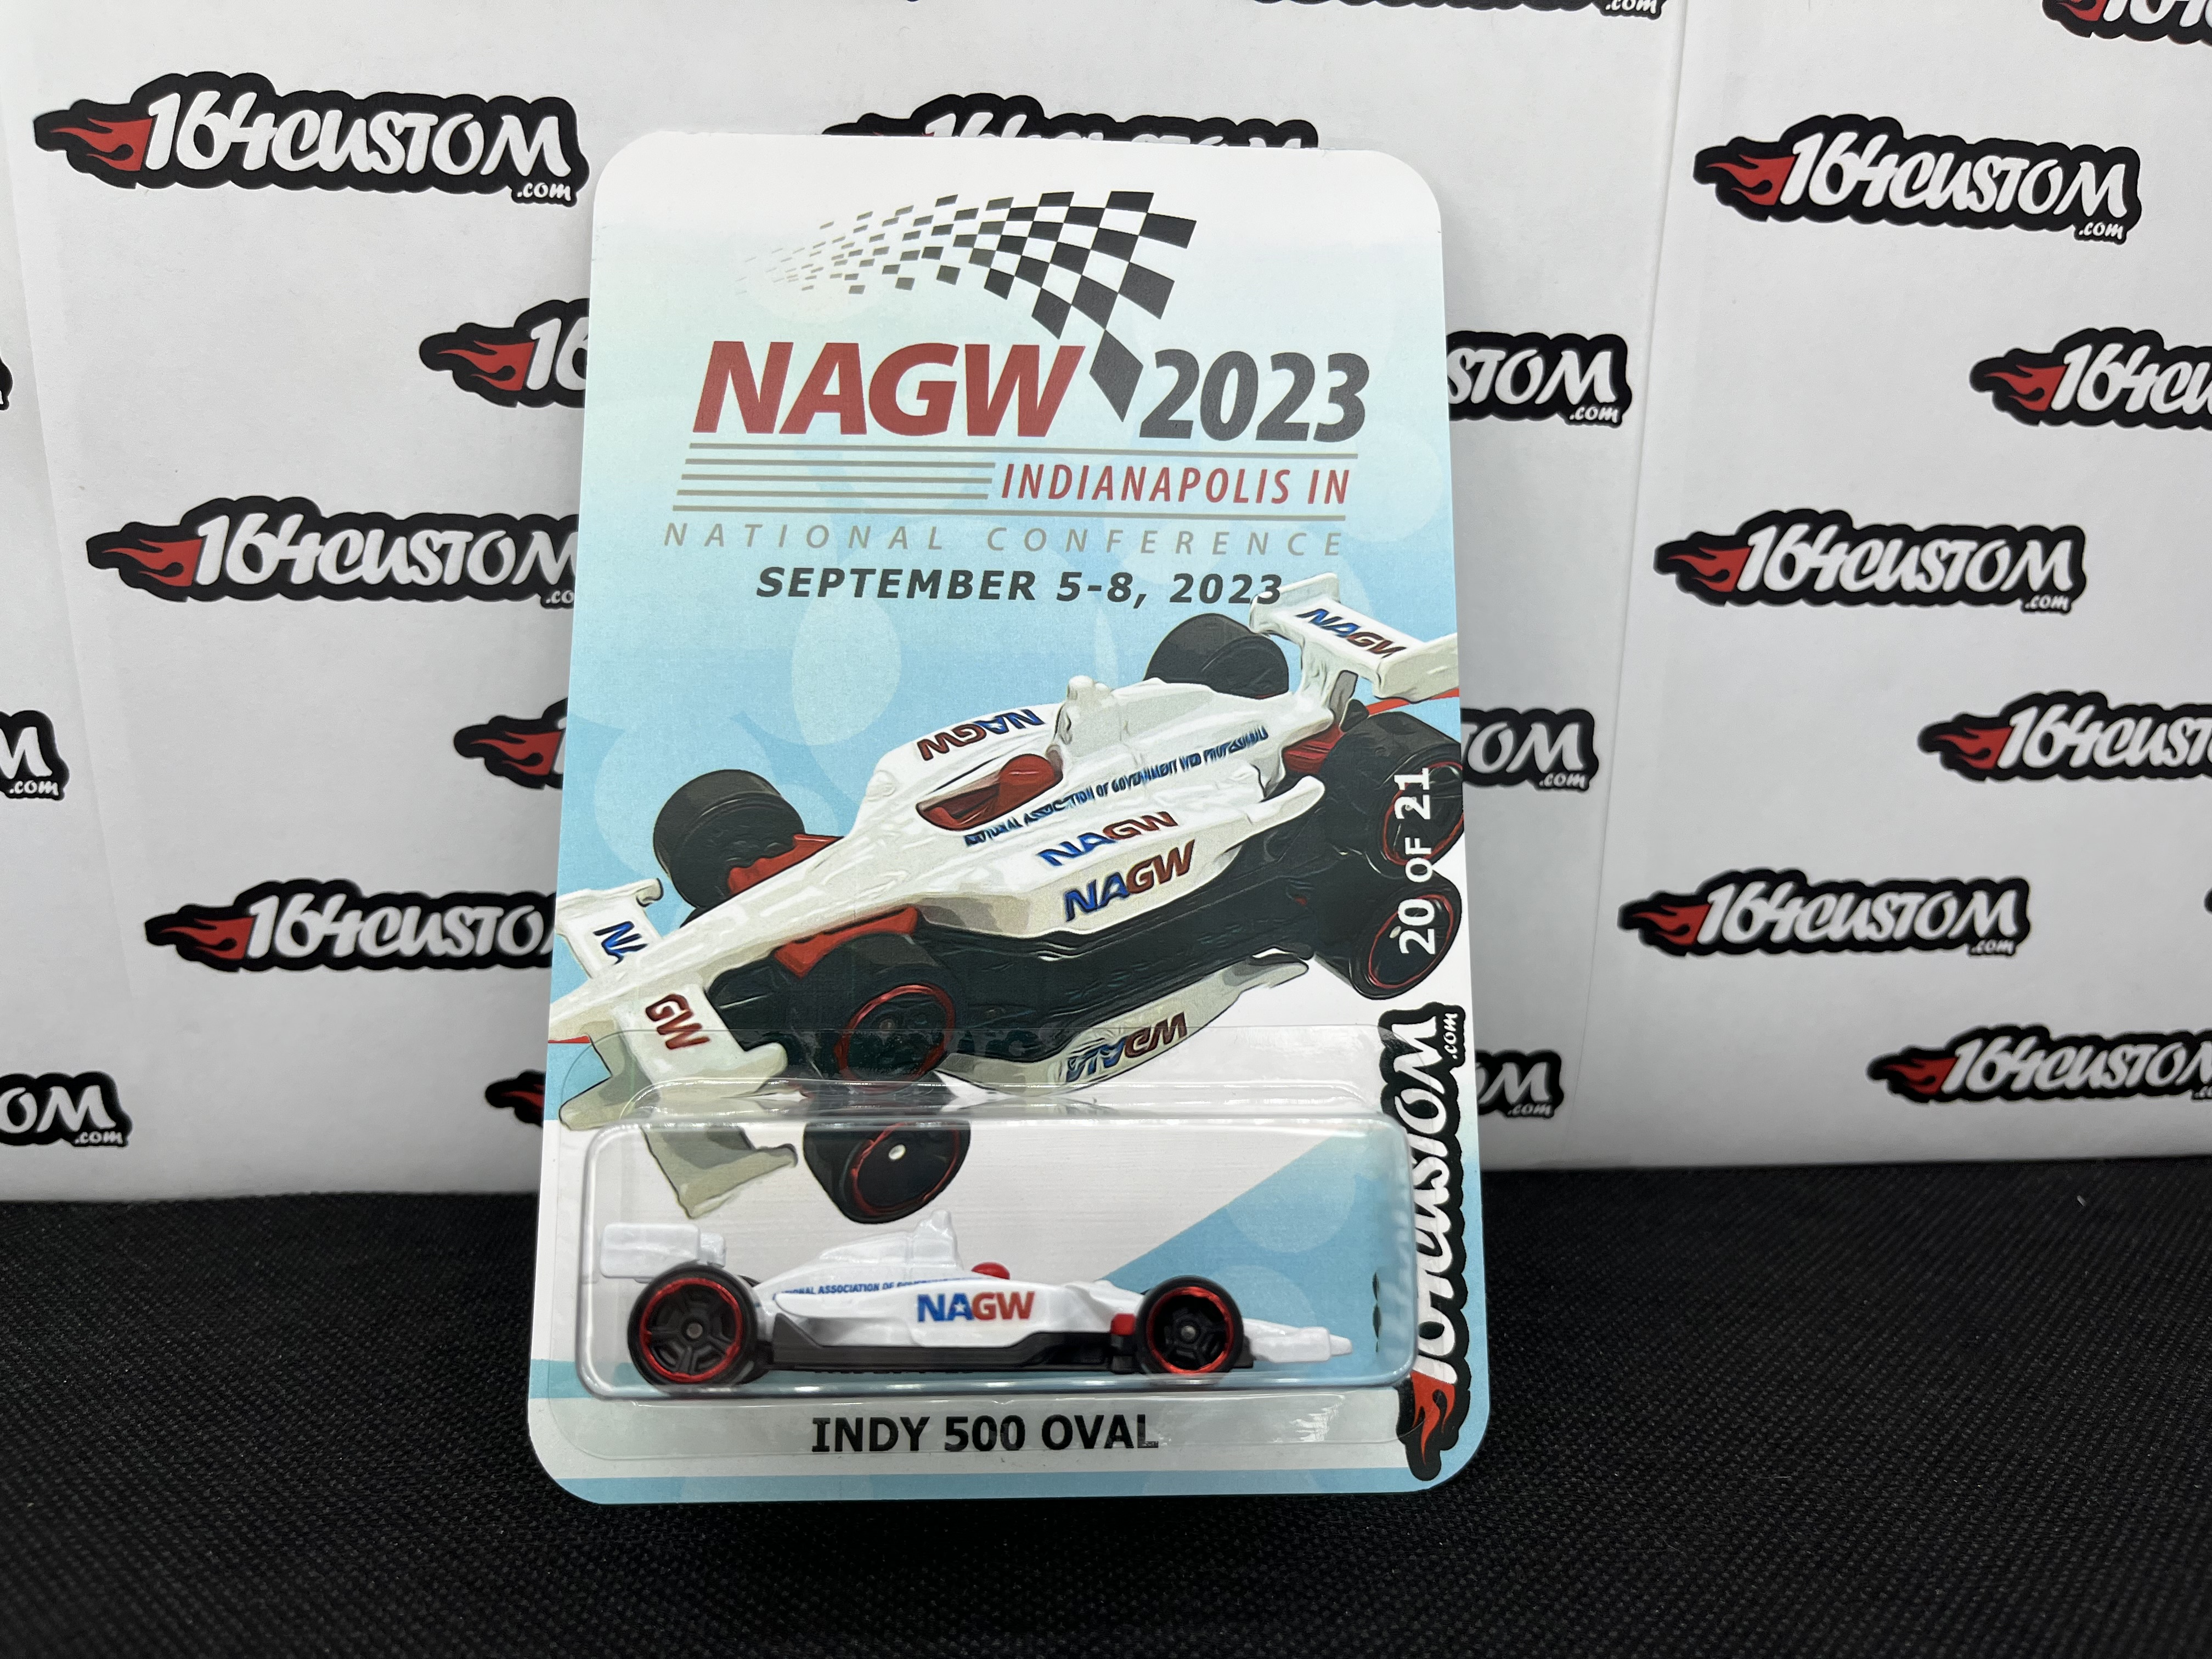 NAGW Conference - 164 custom